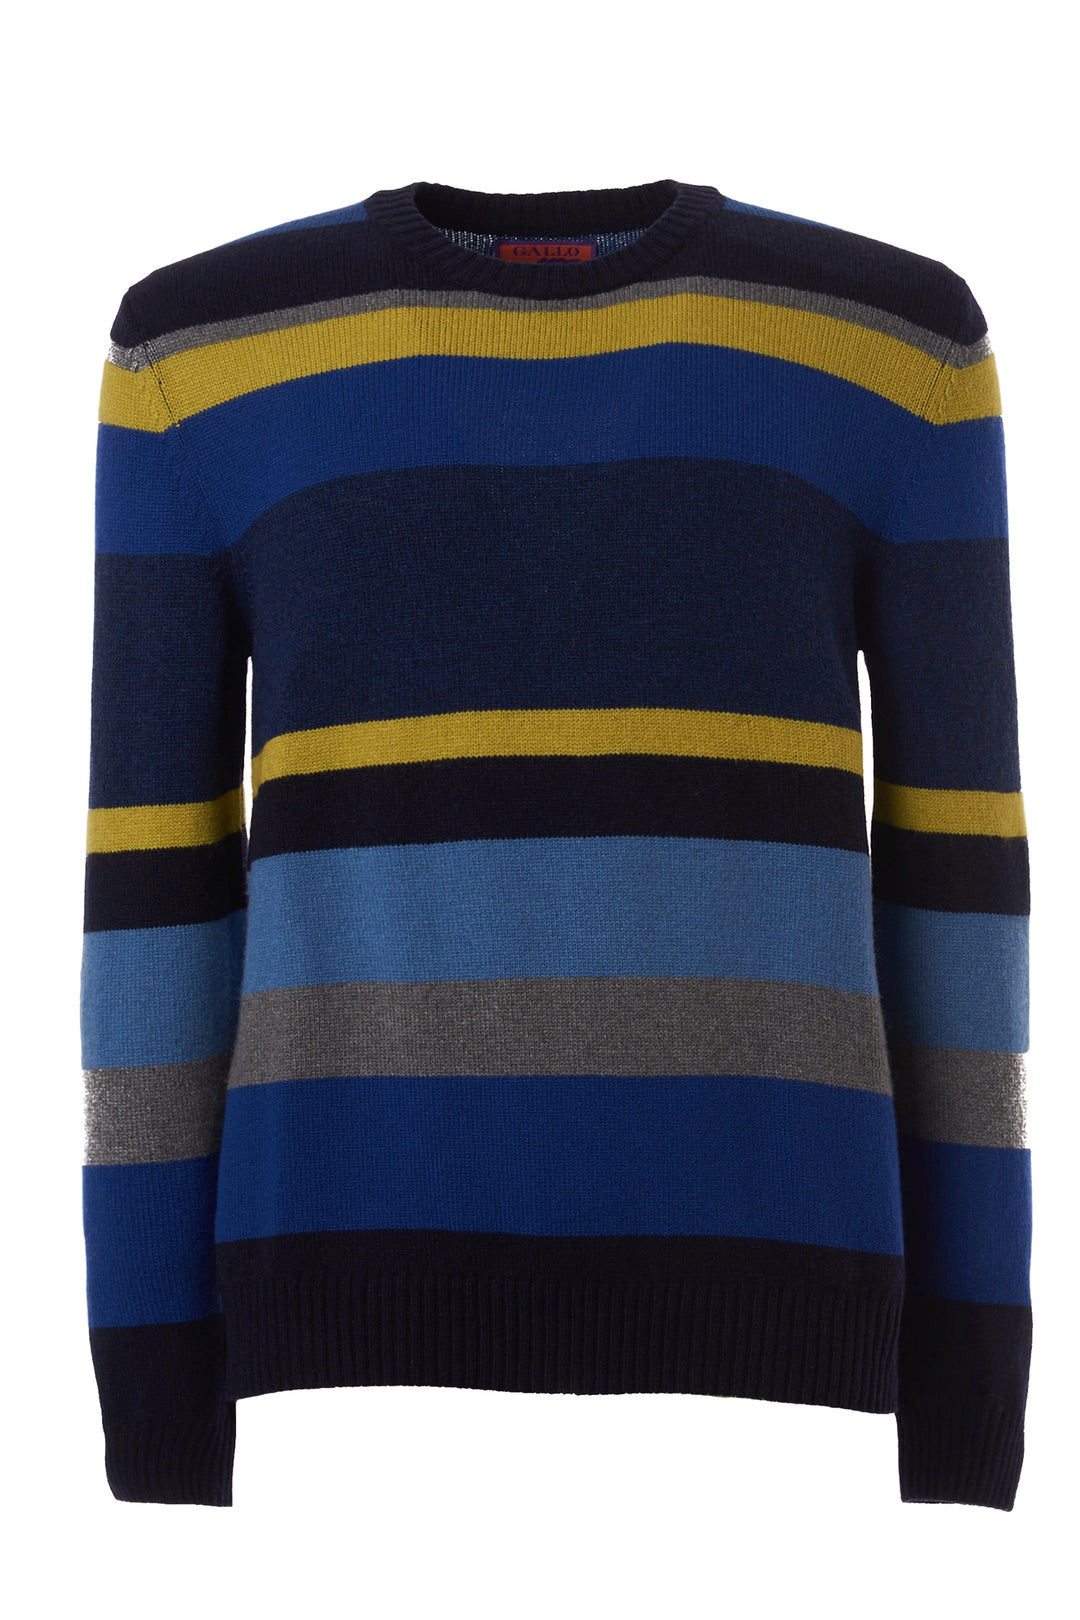 GALLO Pull girocollo lana, viscosa e cashmere blu righe multicolor - Mancinelli 1954